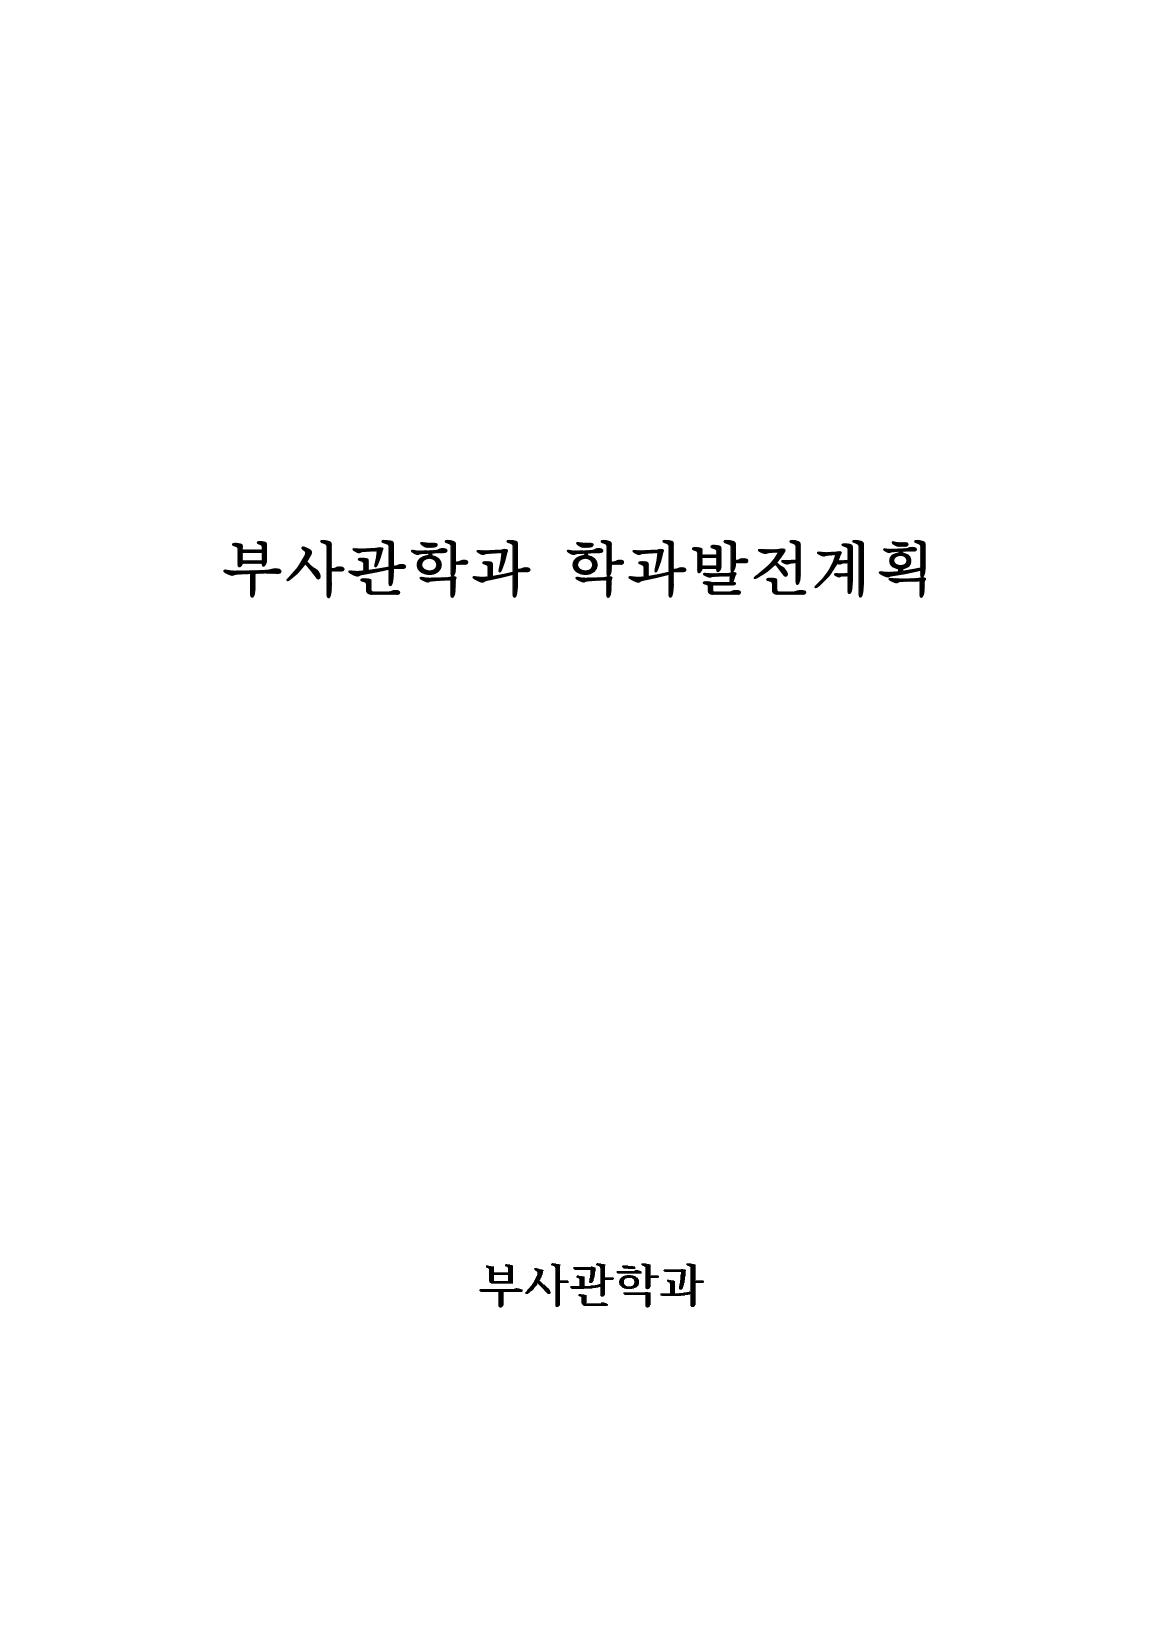 2013 부사관학과 중장기 발전계획